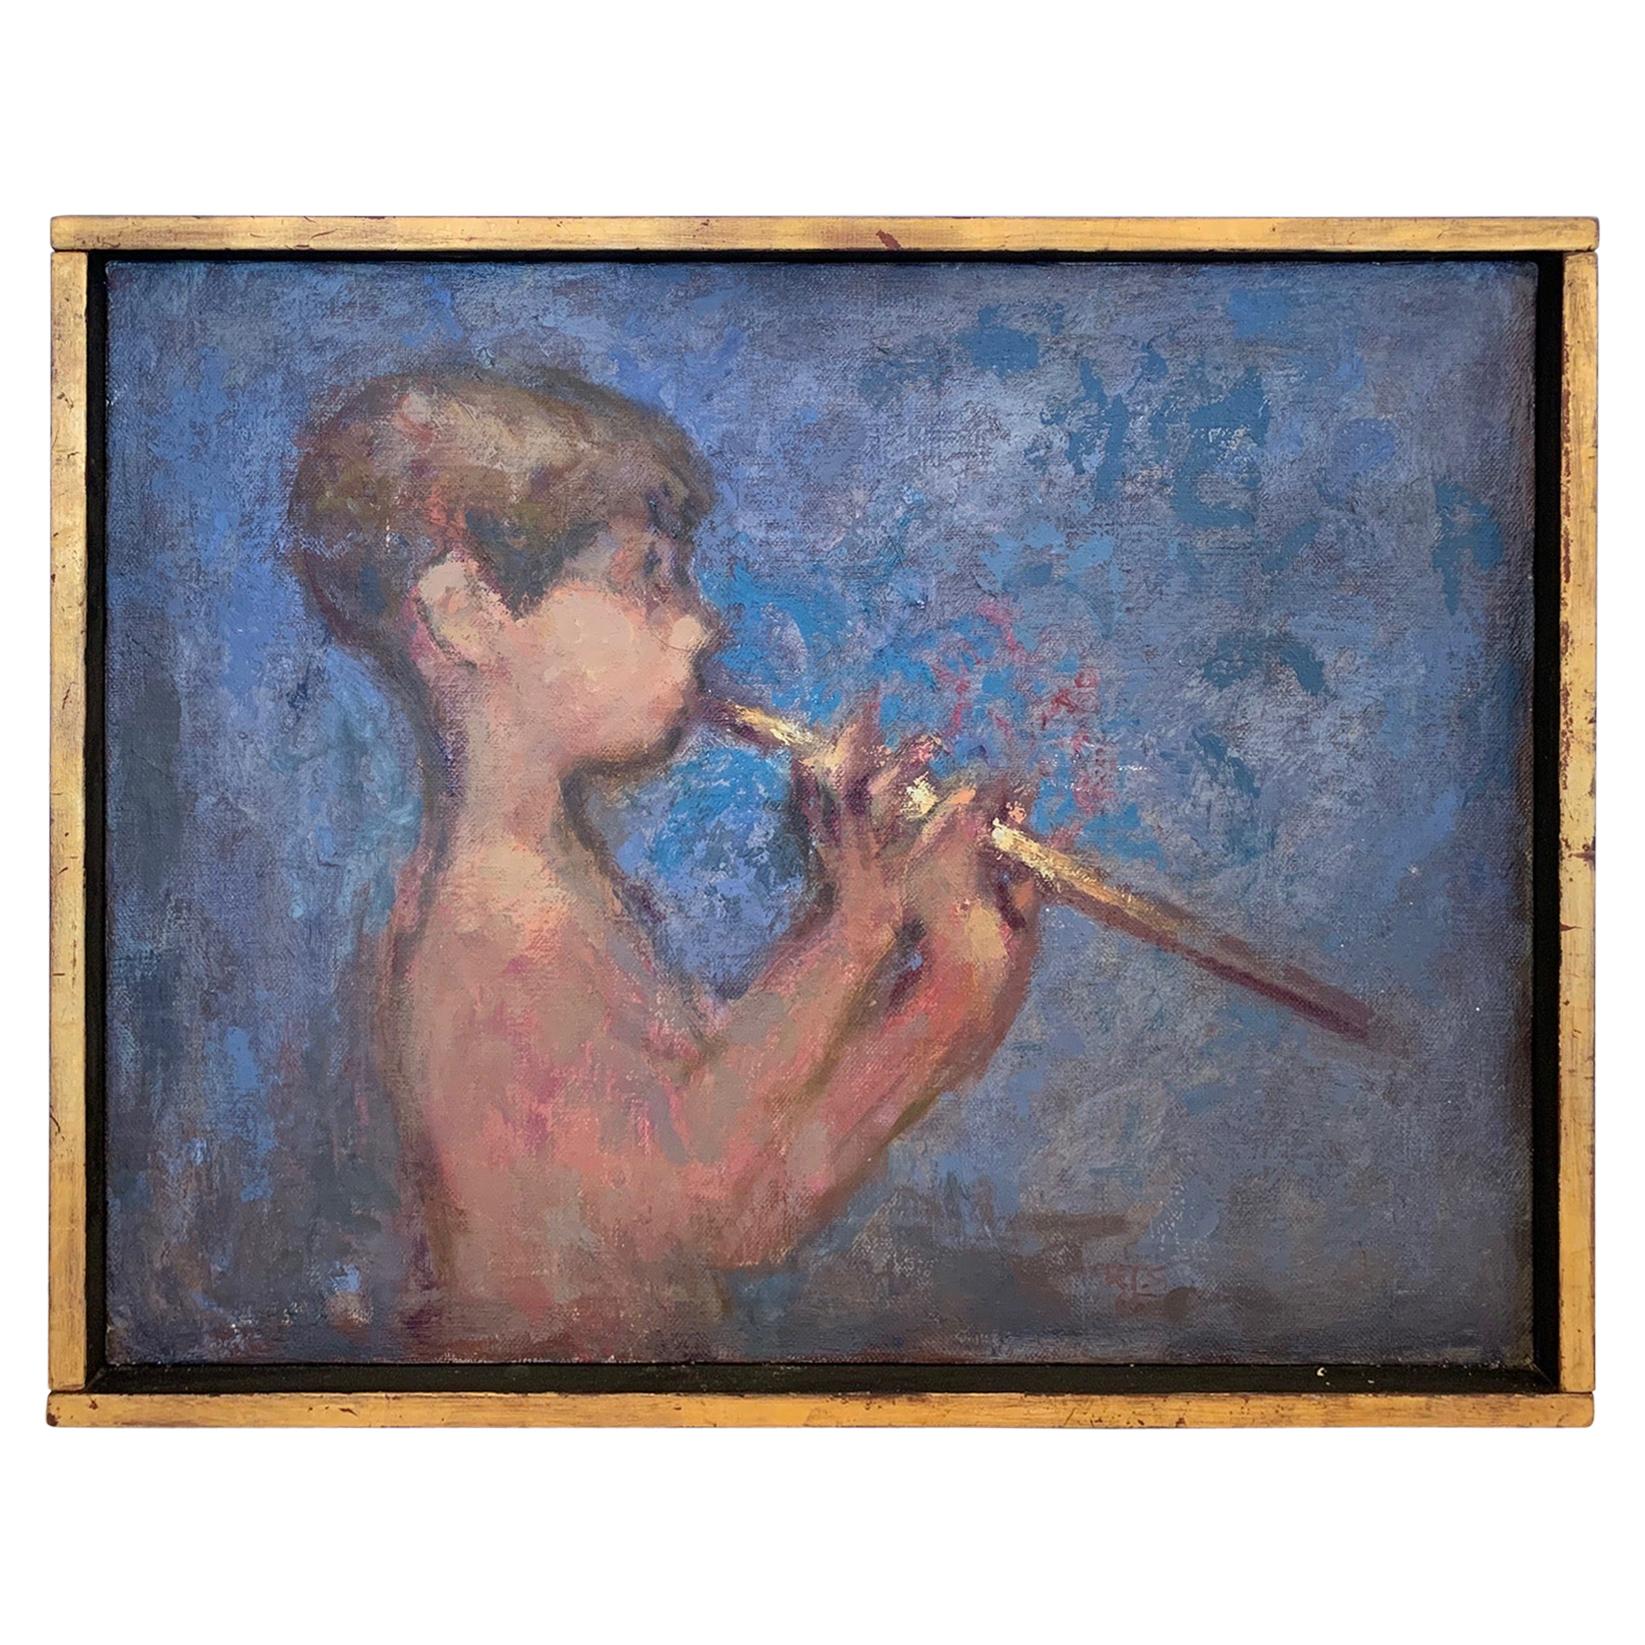 Magical-Gemälde eines Jungen, der eine Flöte spielt